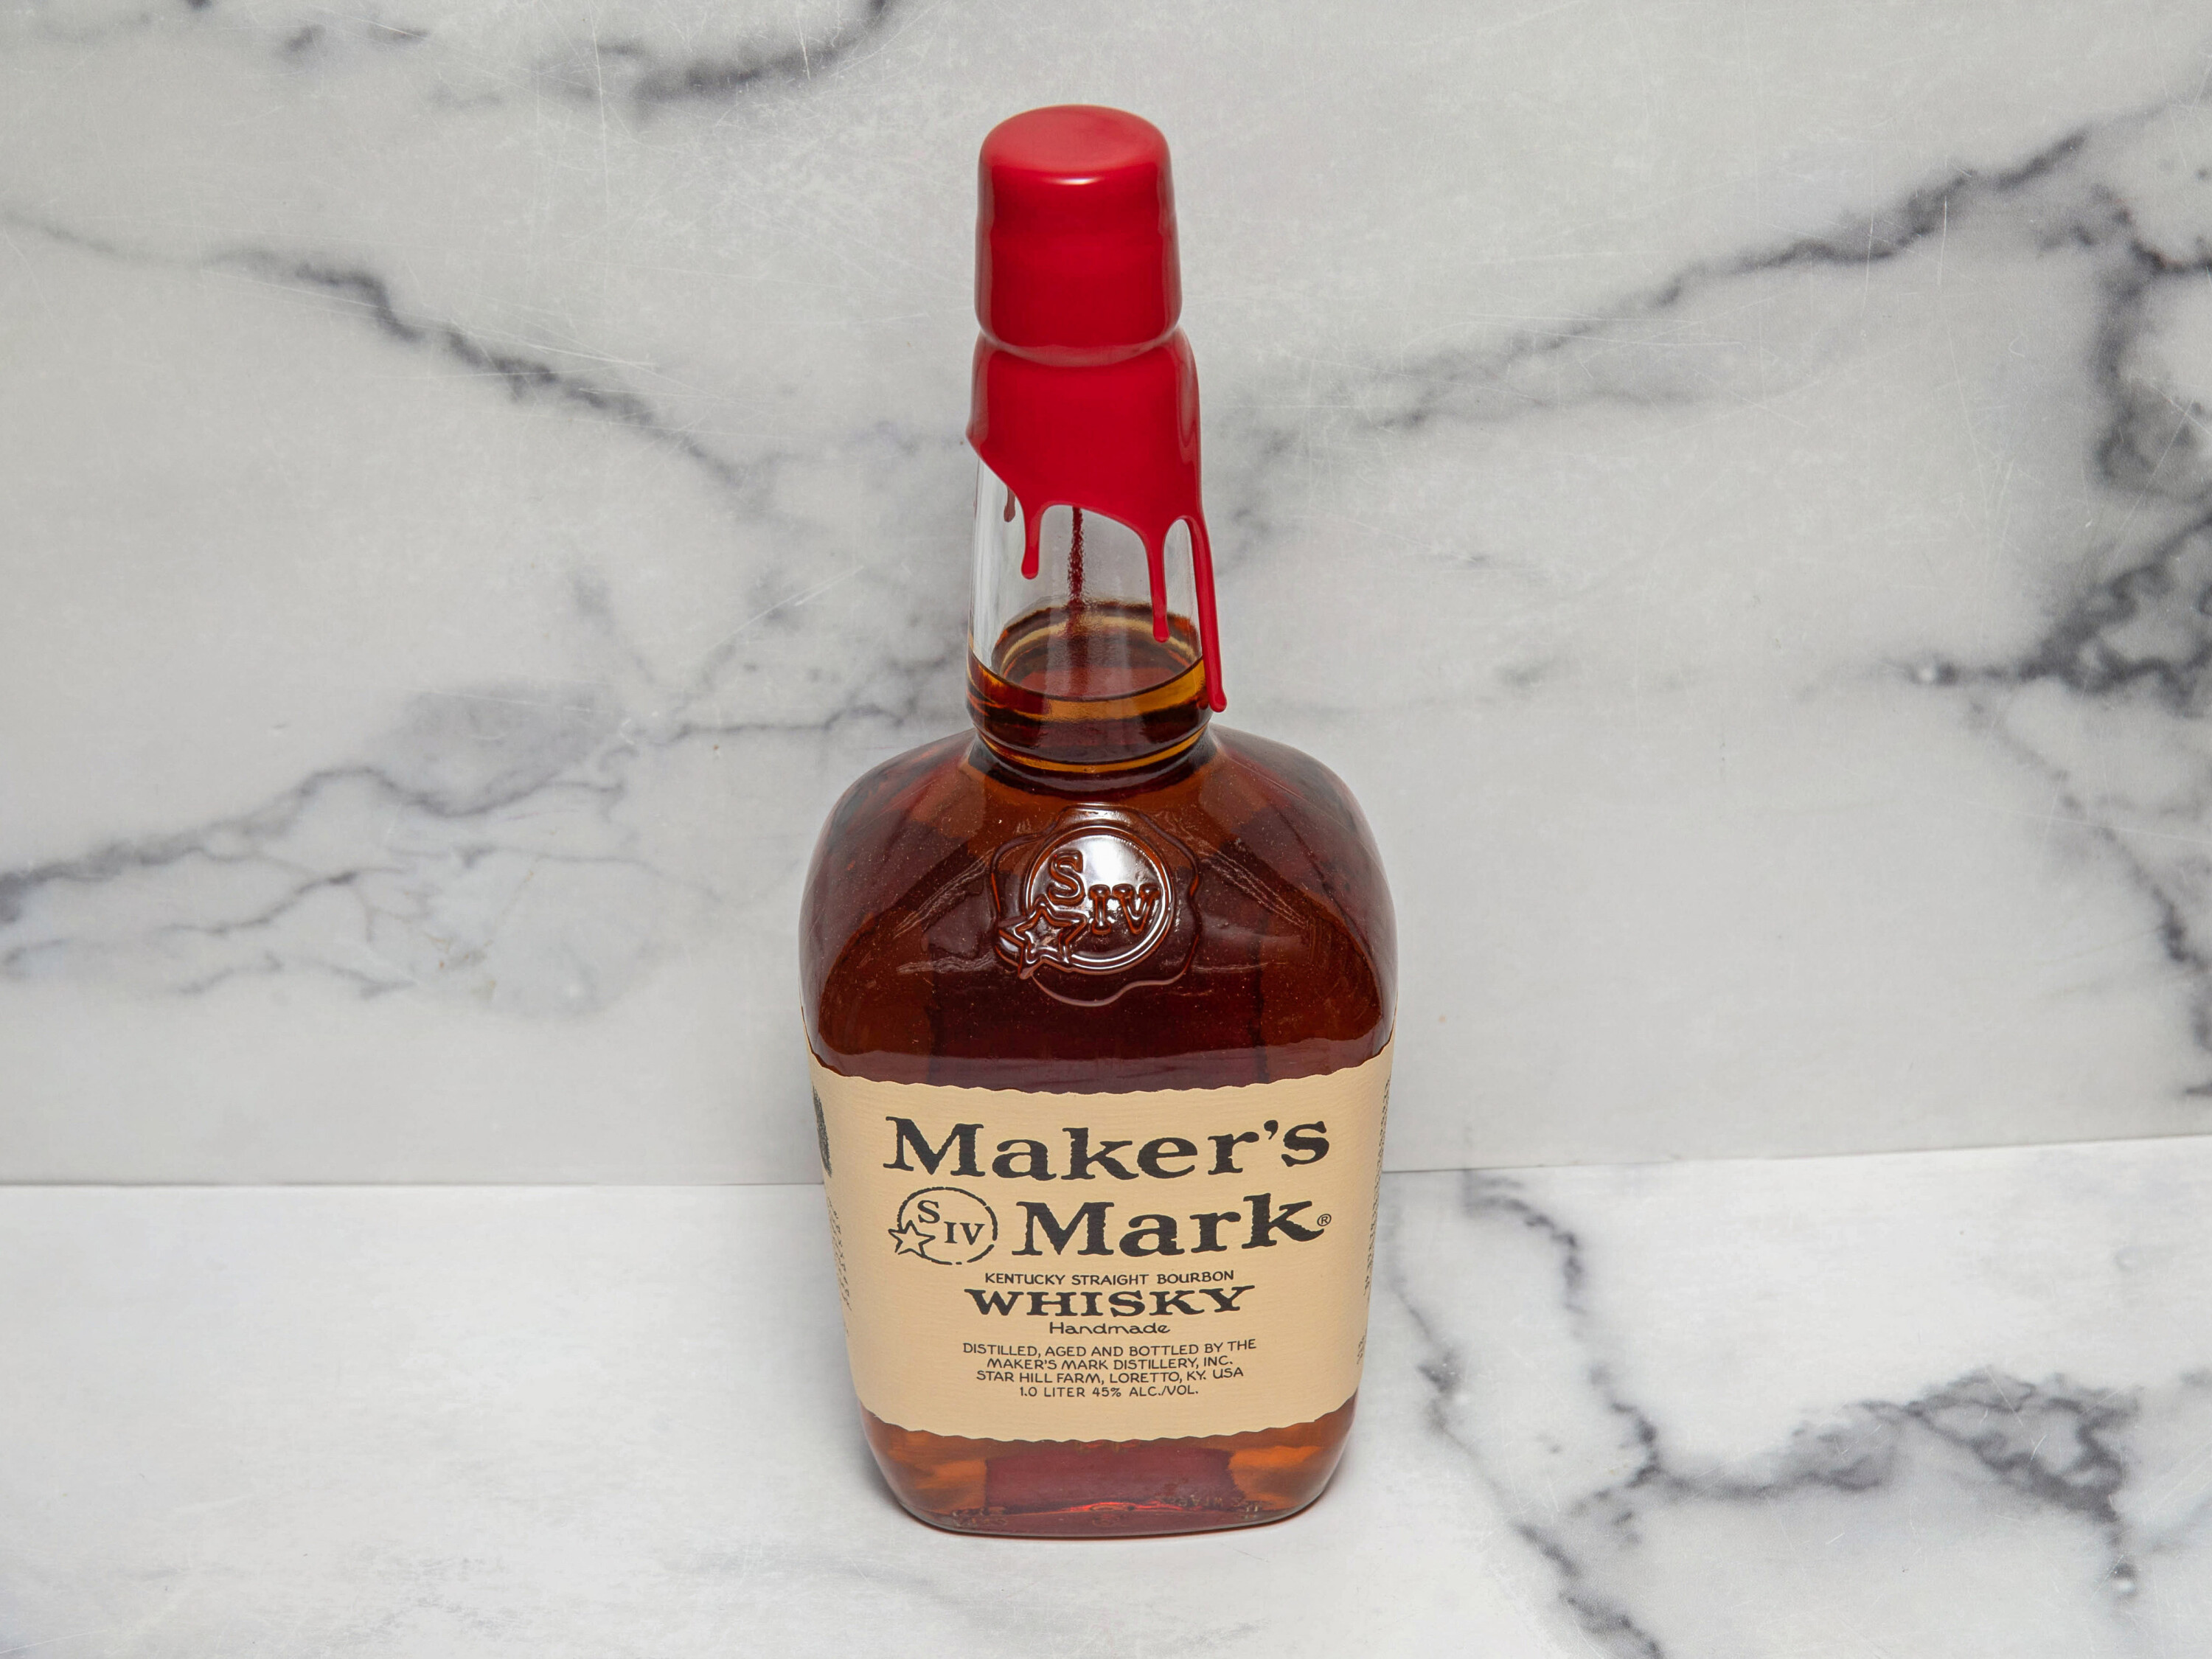 Order Maker's Mark Bourbon Whisky 1 Liter Bottle food online from Dream Mart Liquor store, Huntington on bringmethat.com